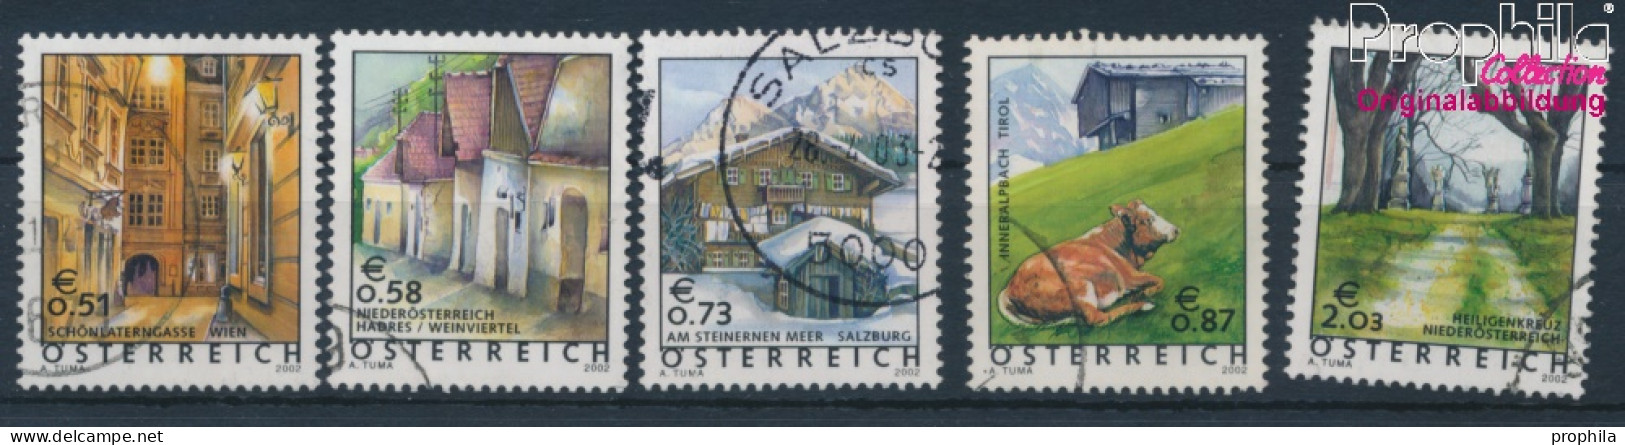 Österreich 2363-2367 (kompl.Ausg.) Gestempelt 2002 Freimarken (10404375 - Used Stamps